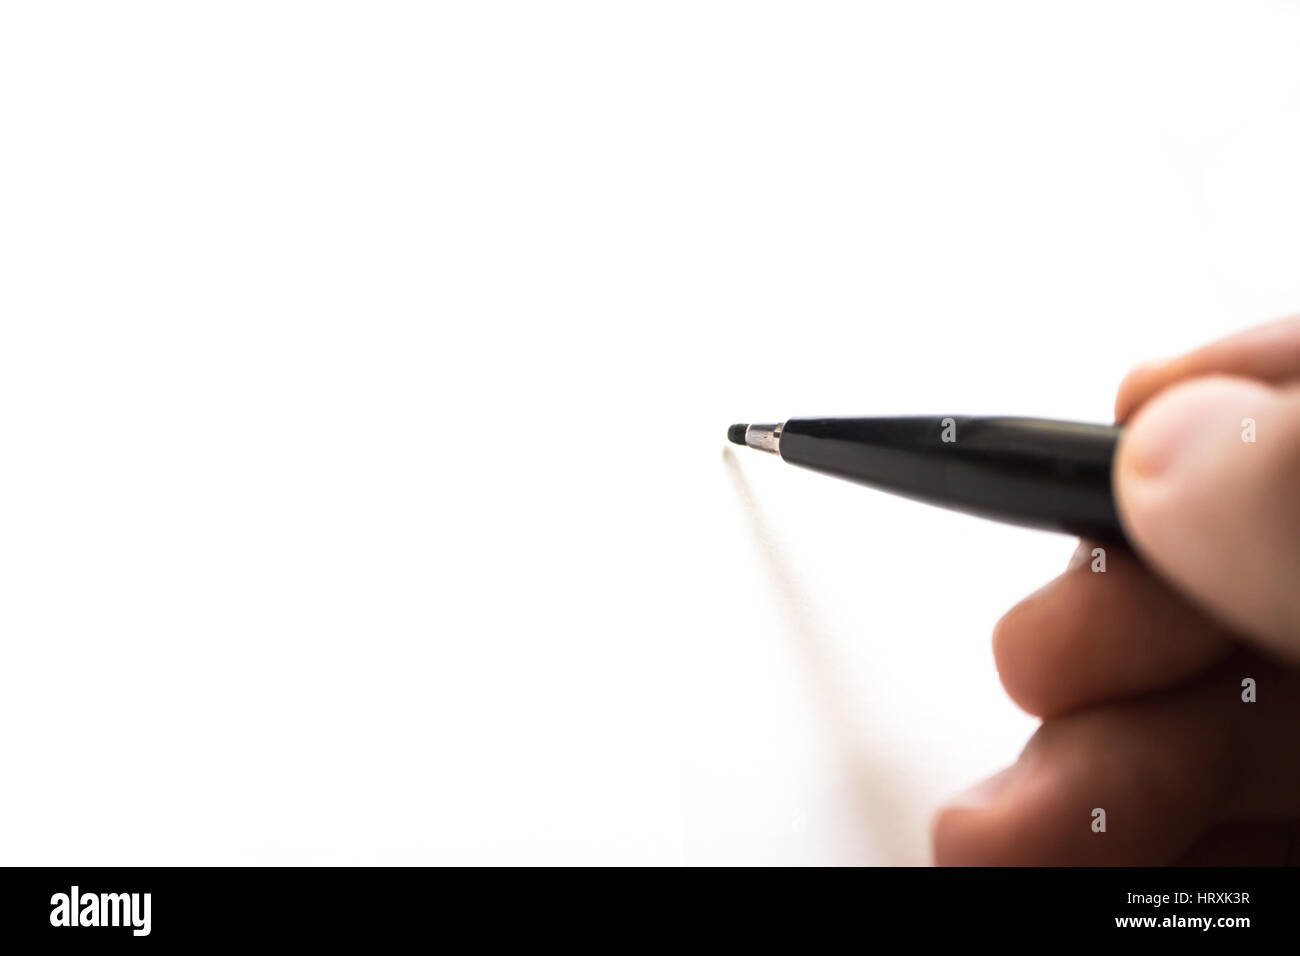 Marca de lápiz escribiendo sobre papel blanco. Enfoque borroso. Foto de stock